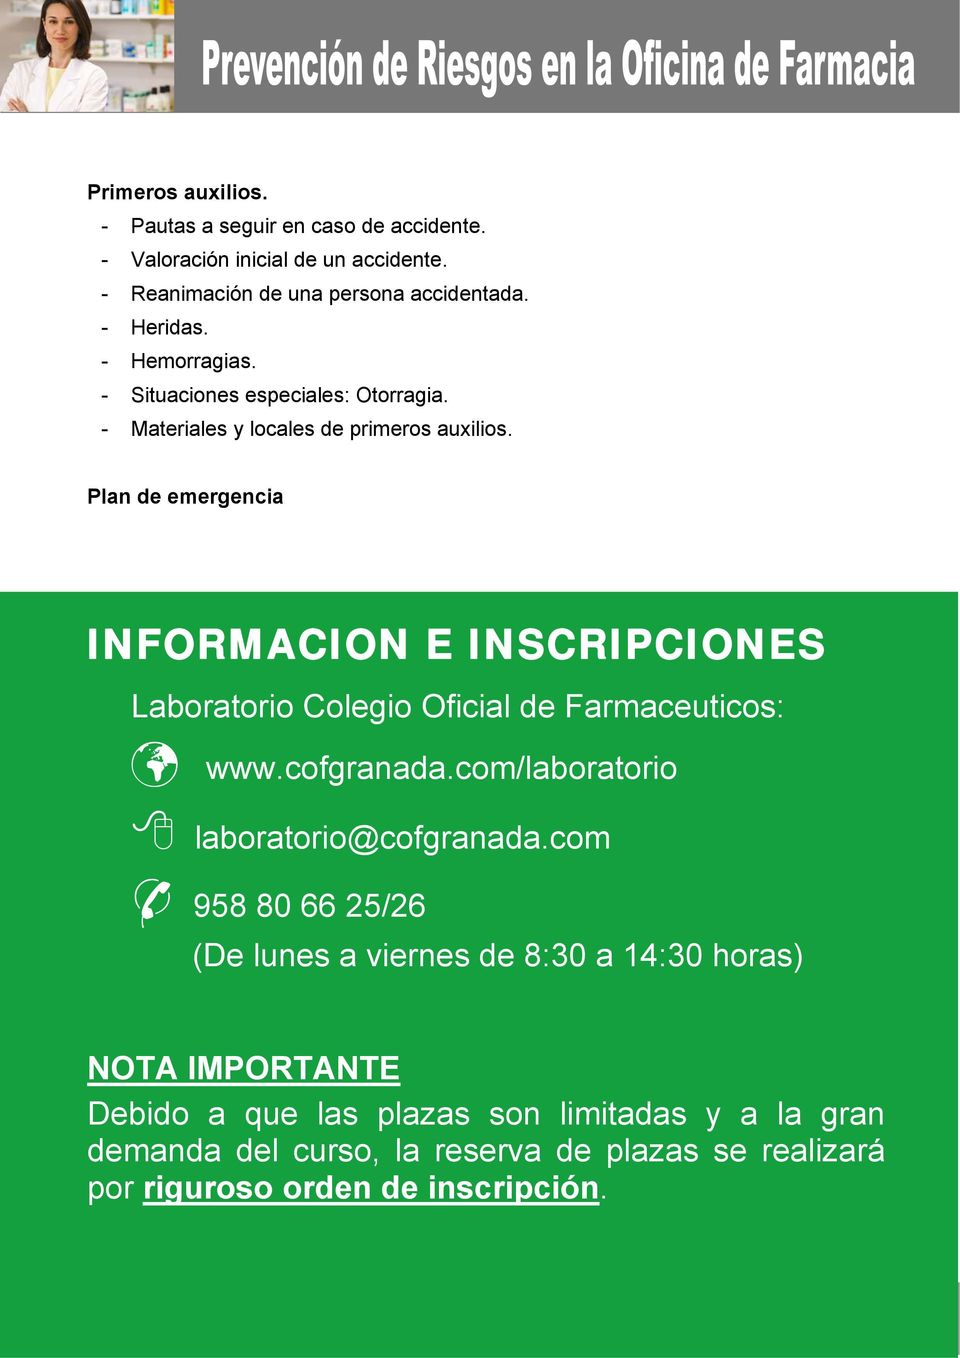 Plan de emergencia INFORMACION E INSCRIPCIONES Laboratorio : www.cofgranada.com/laboratorio laboratorio@cofgranada.